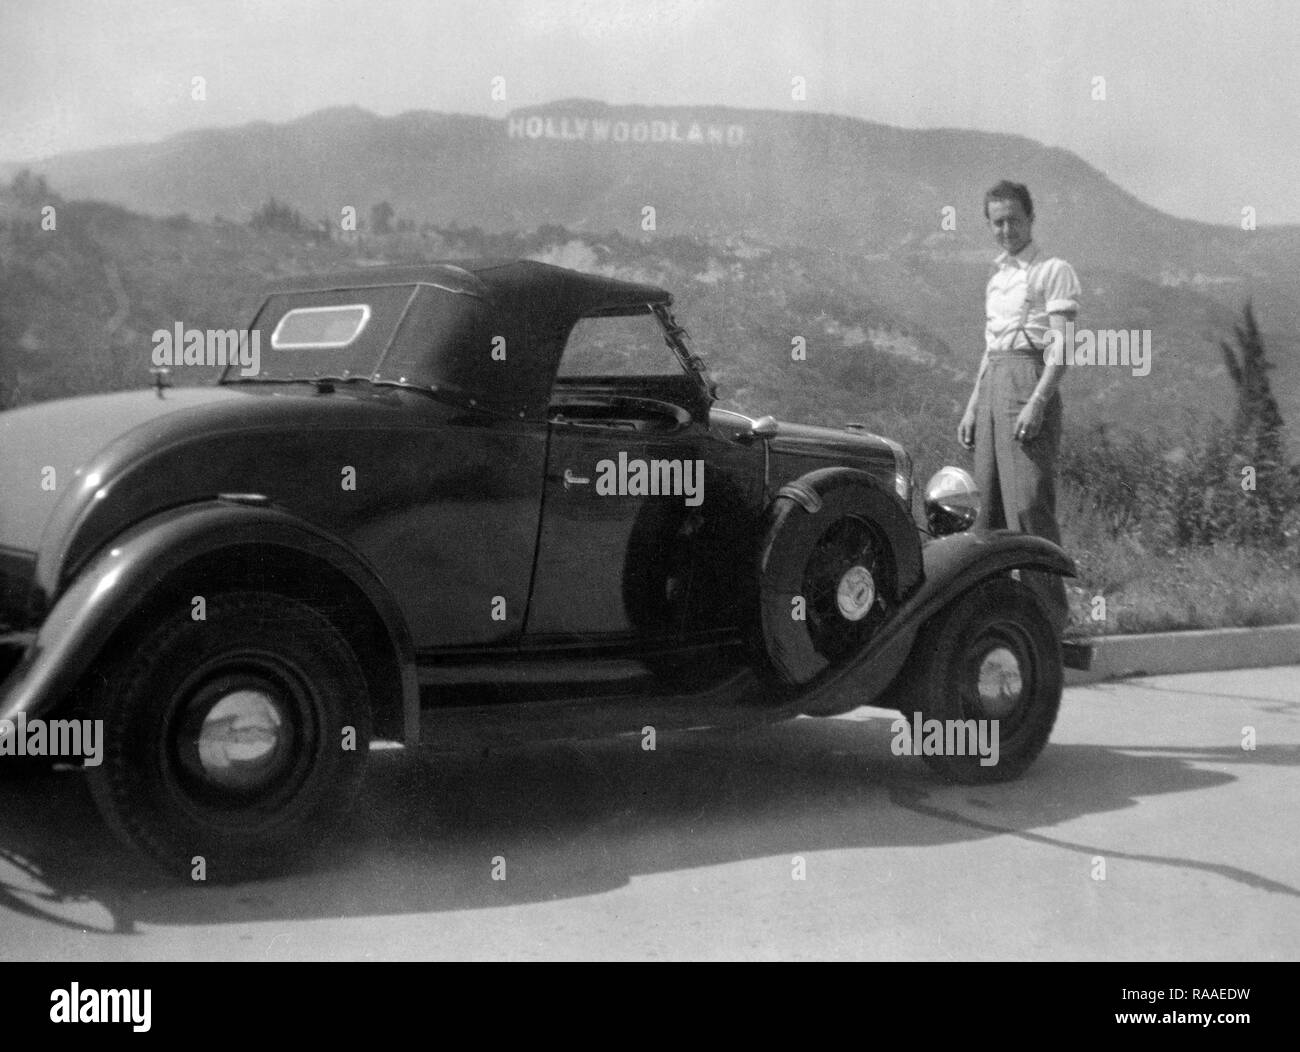 Un jeune homme pose avec sa voiture avec l'original Hollywoodland signe, ca. L'année 1930. Banque D'Images